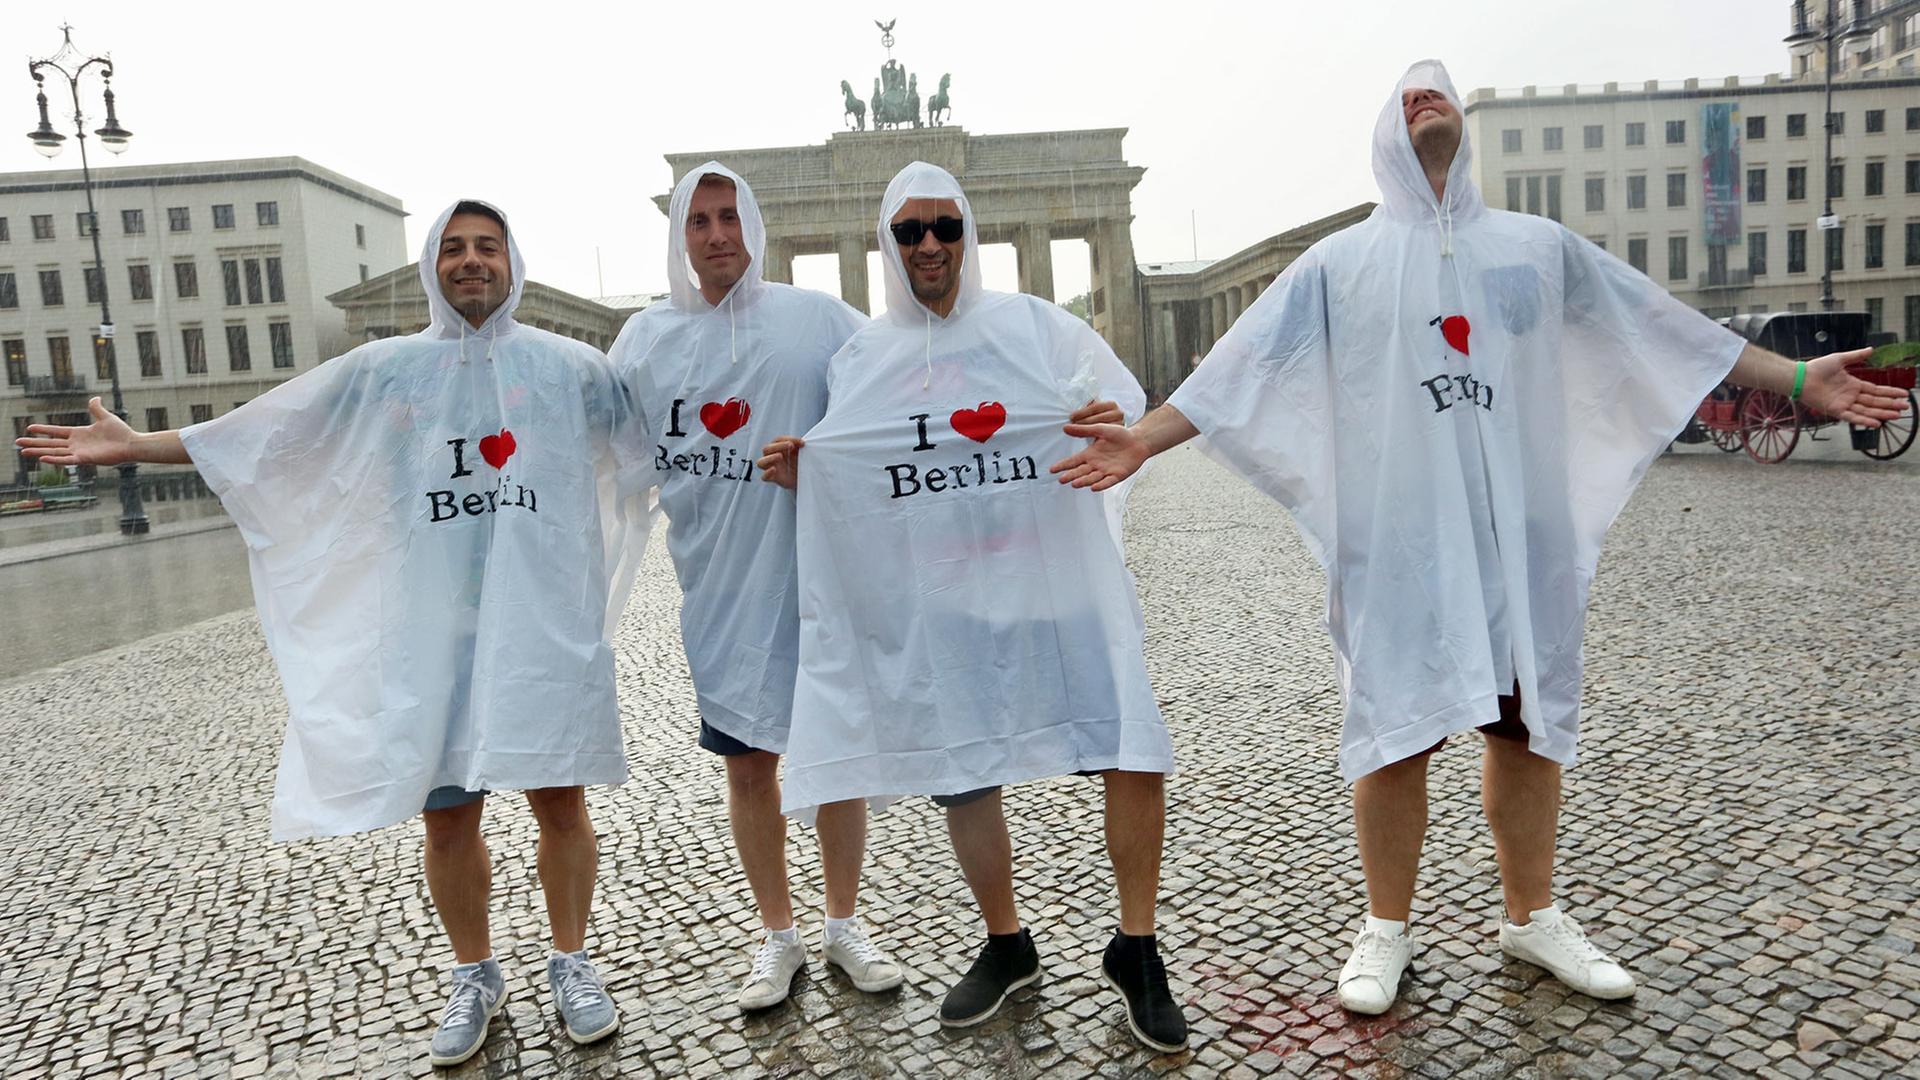 Touristen stehen vor dem Brandenburger Tor in Berlin Grad im Regen.